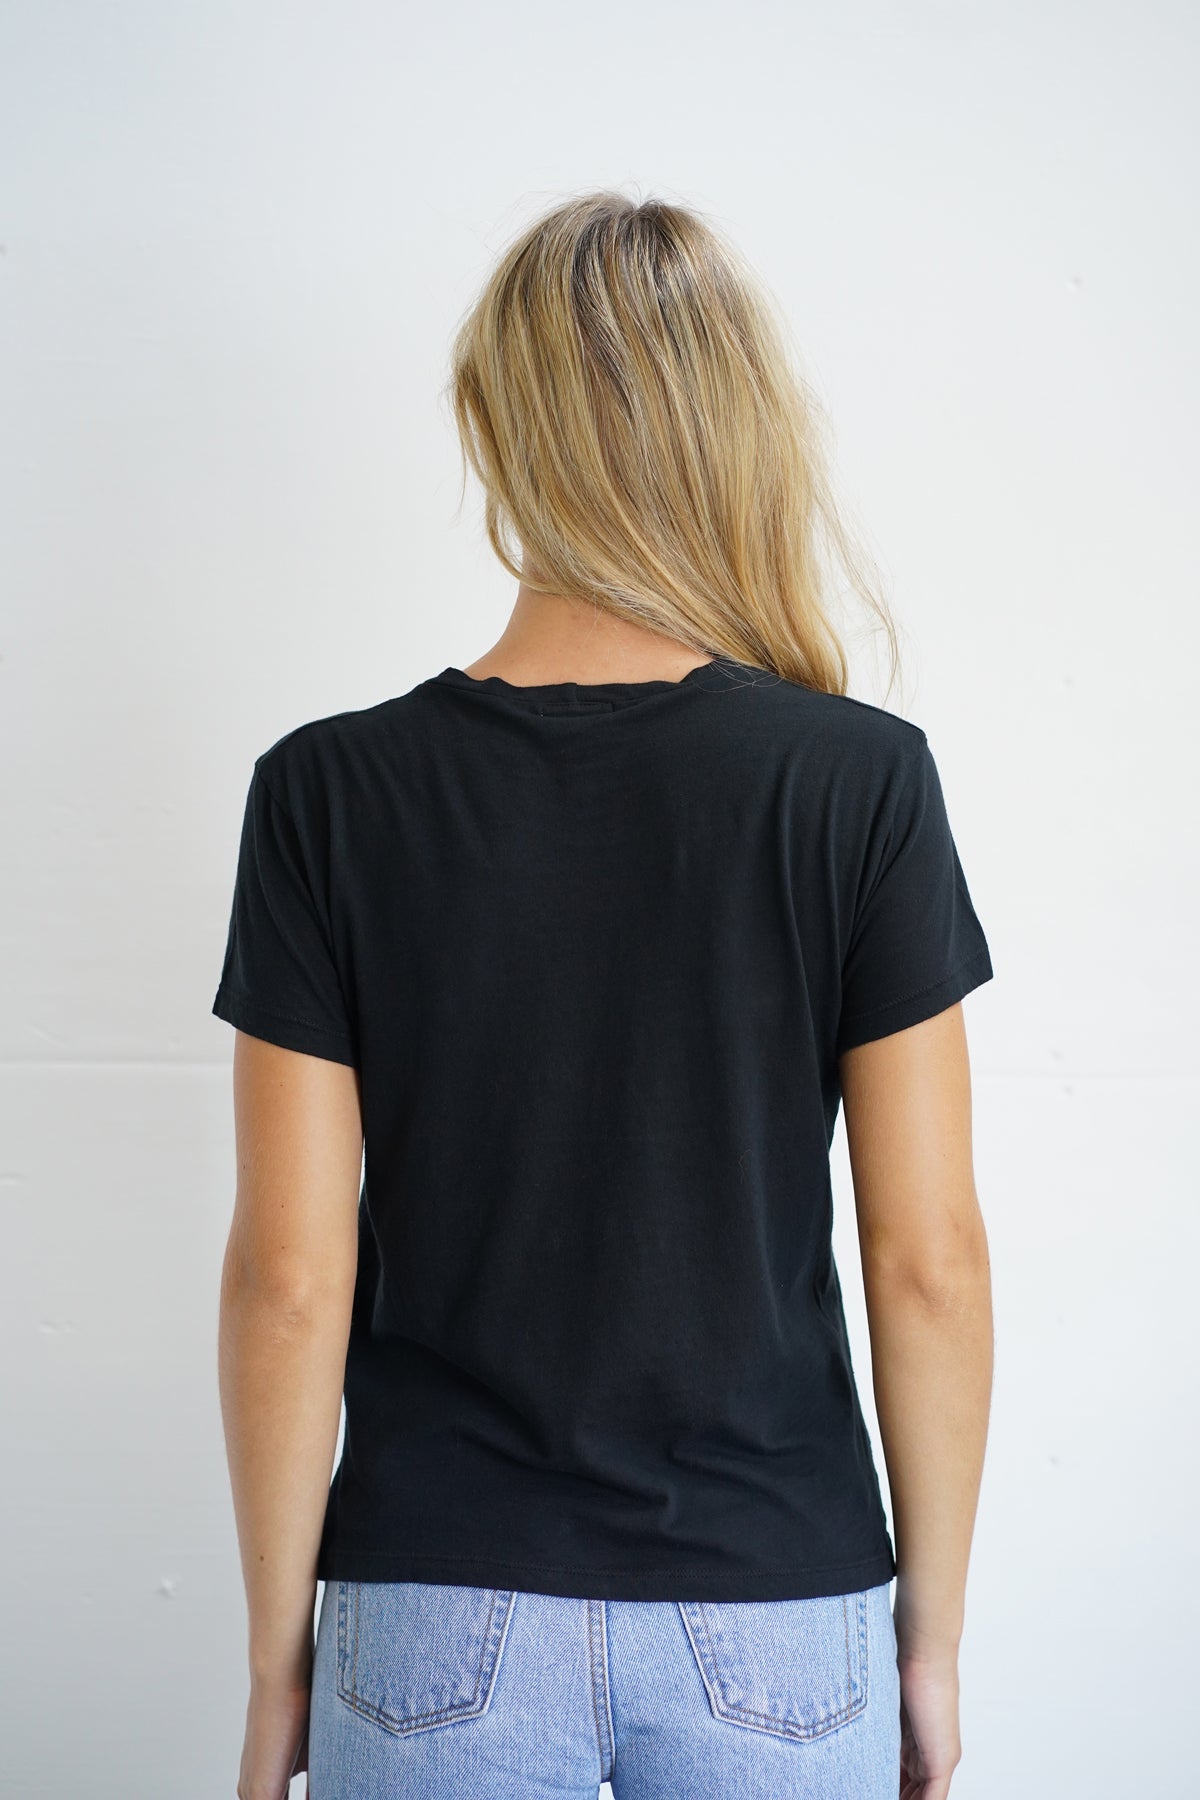 Camiseta LNA Essential Cotton Mason com gola redonda em preto